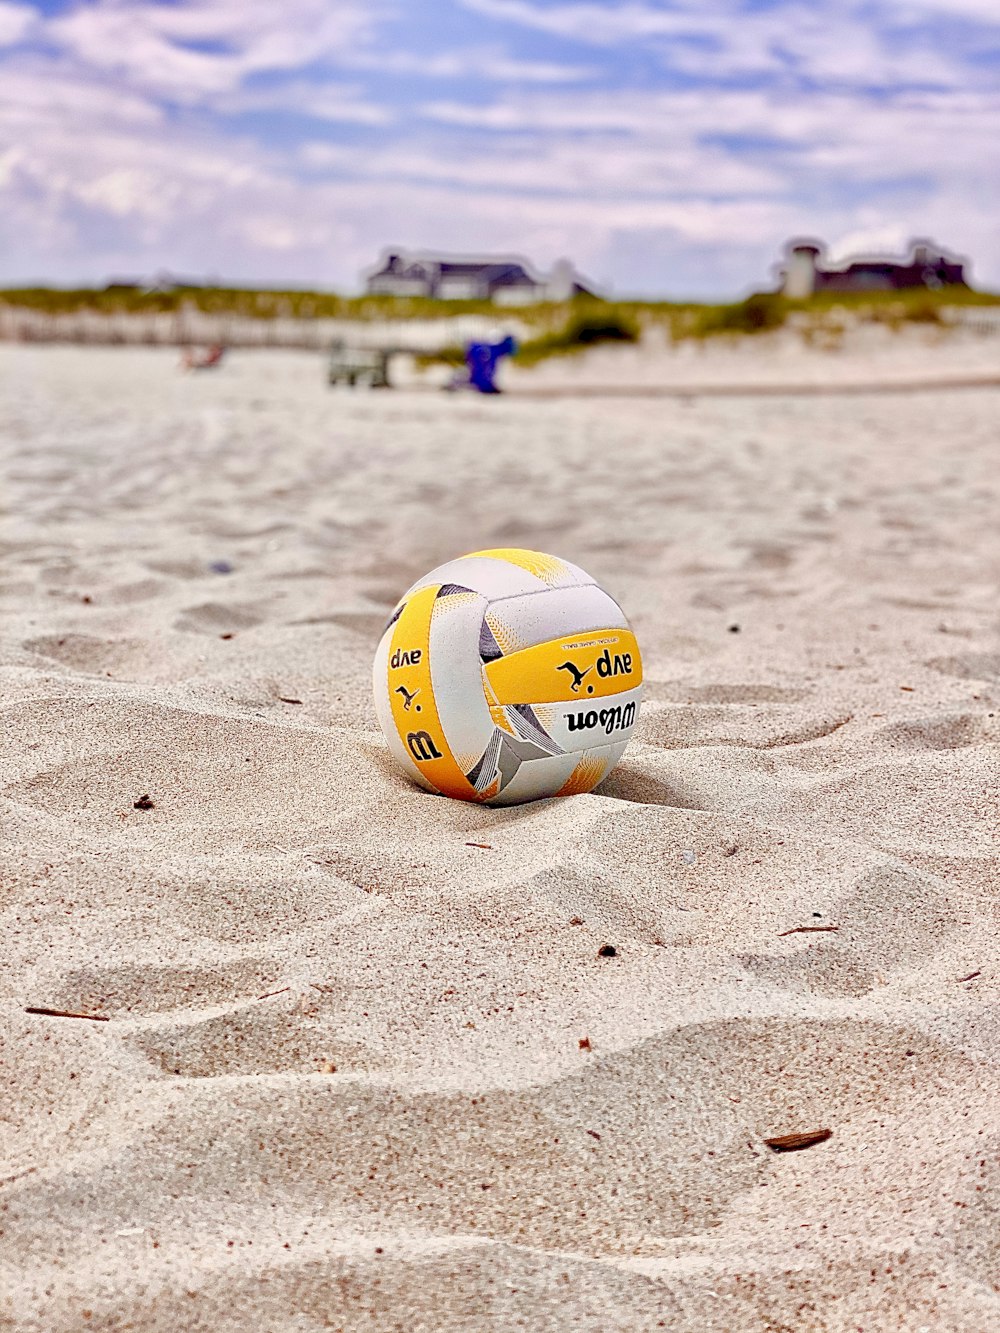 volley-ball jaune et blanc sur sable blanc pendant la journée